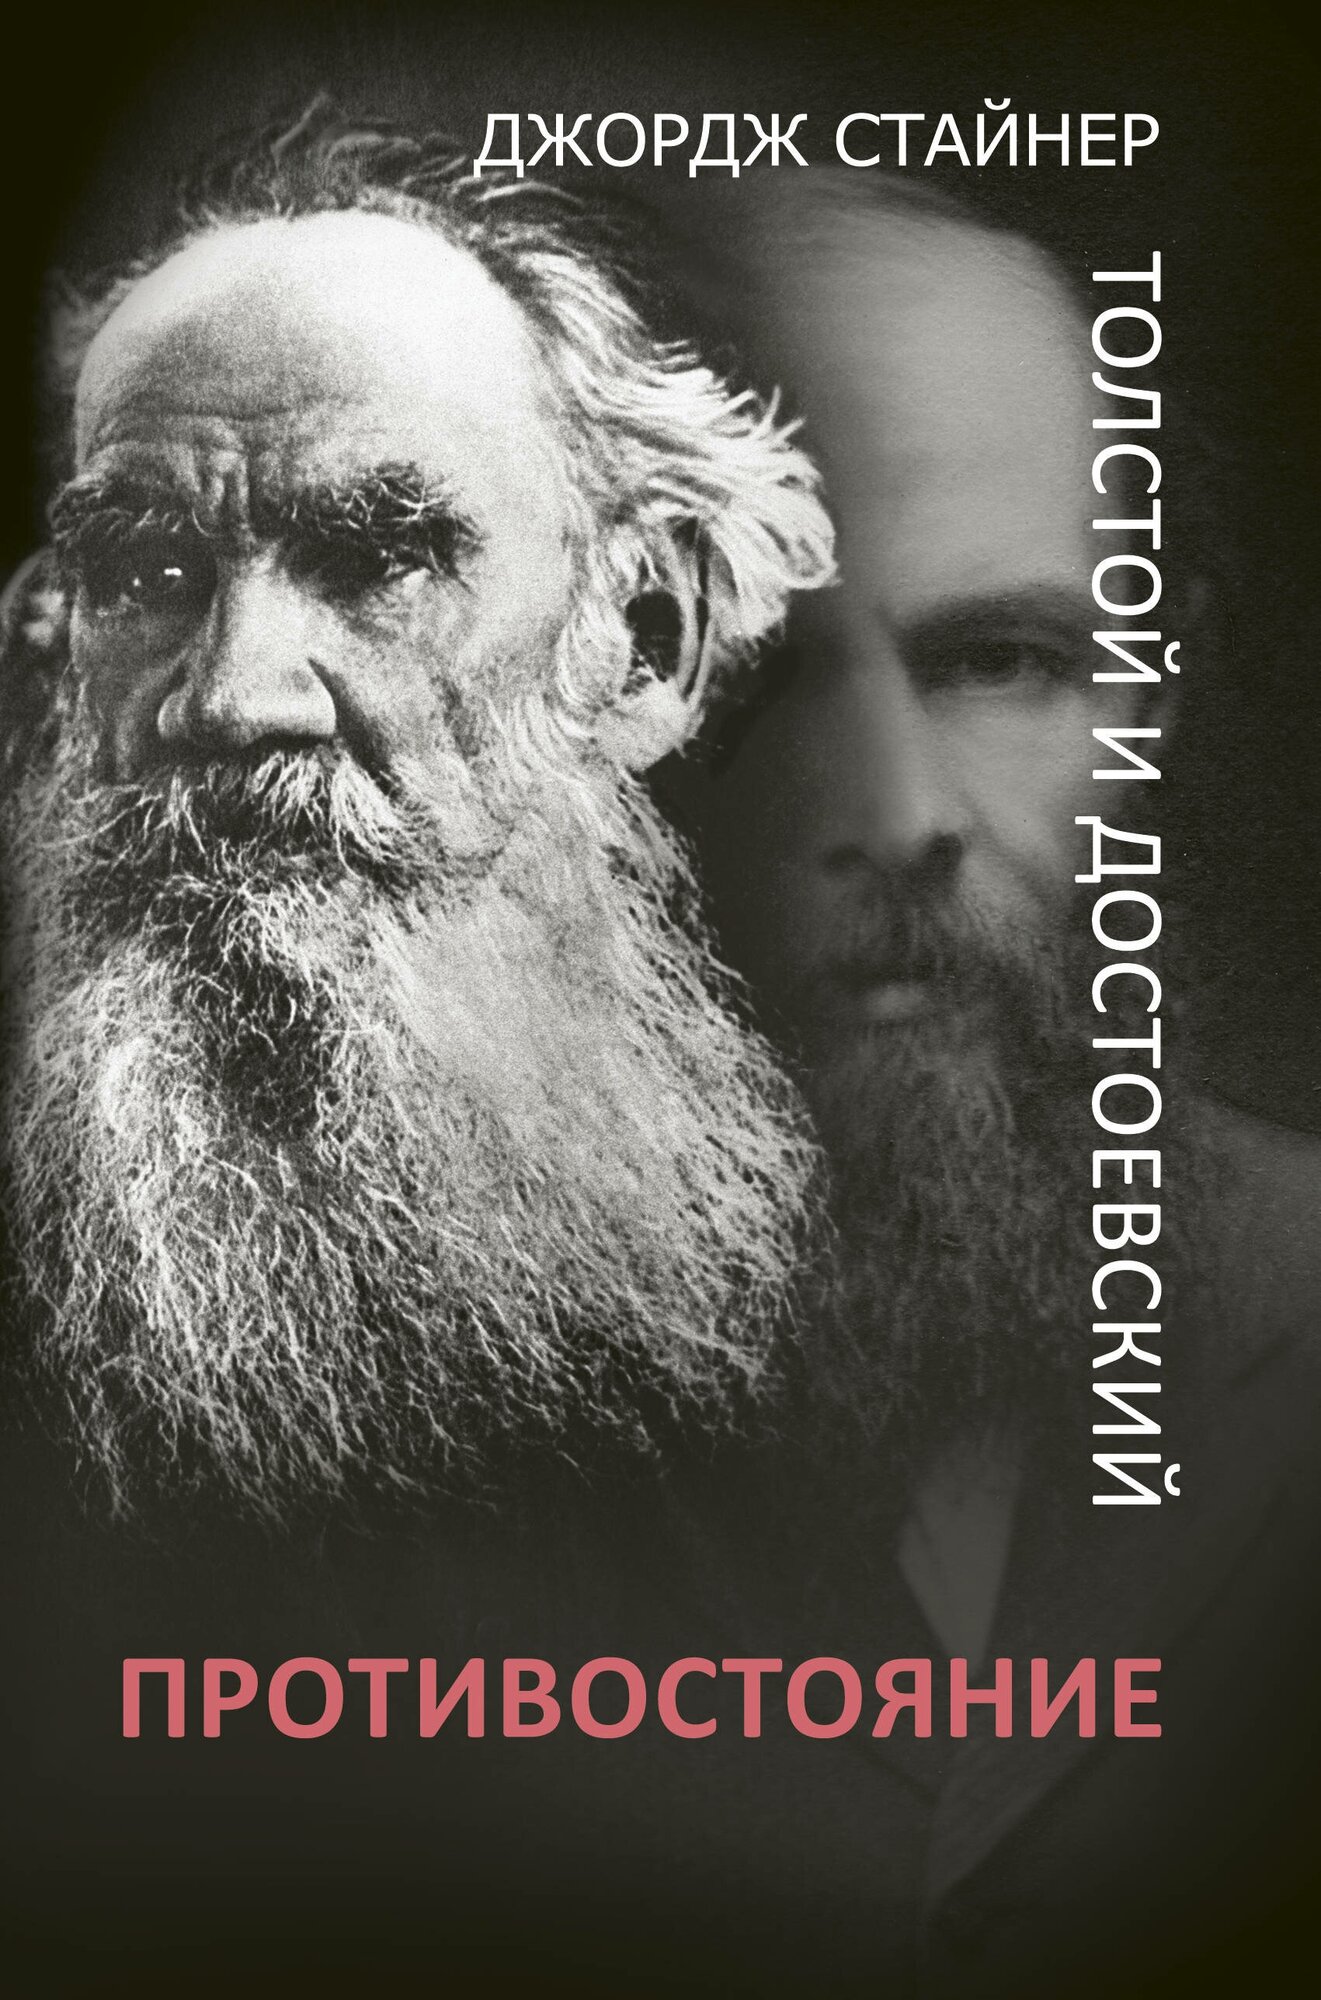 Толстой и Достоевский: противостояние Стайнер Д.